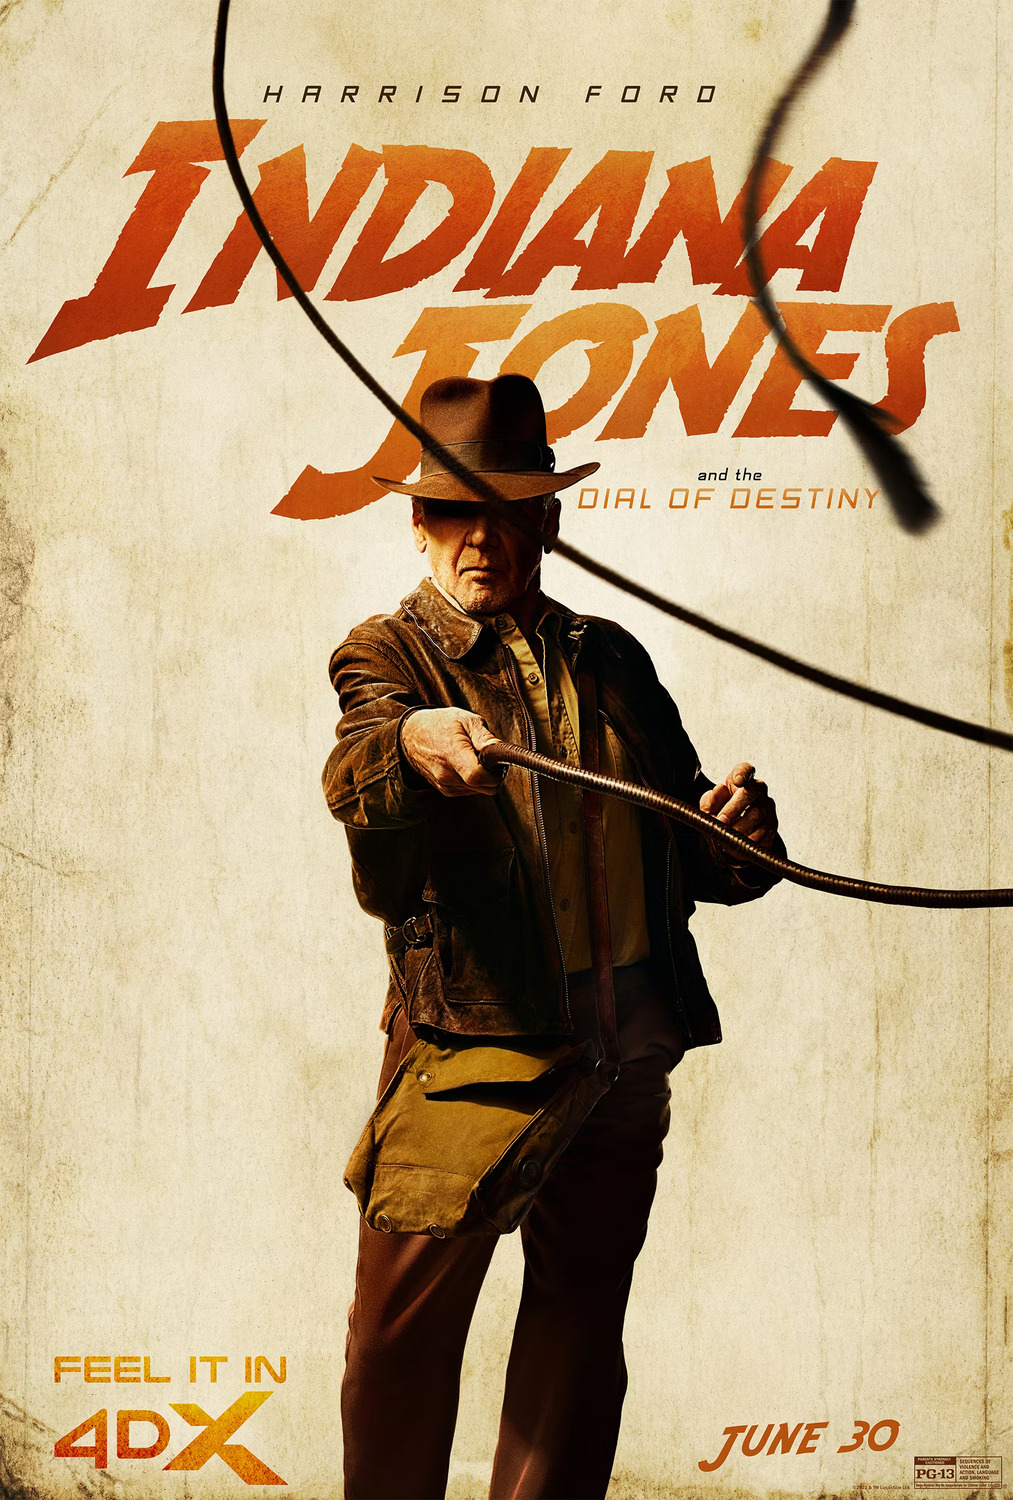 Novas fotos de Harrison Ford em “Indiana Jones 5”! - POPline